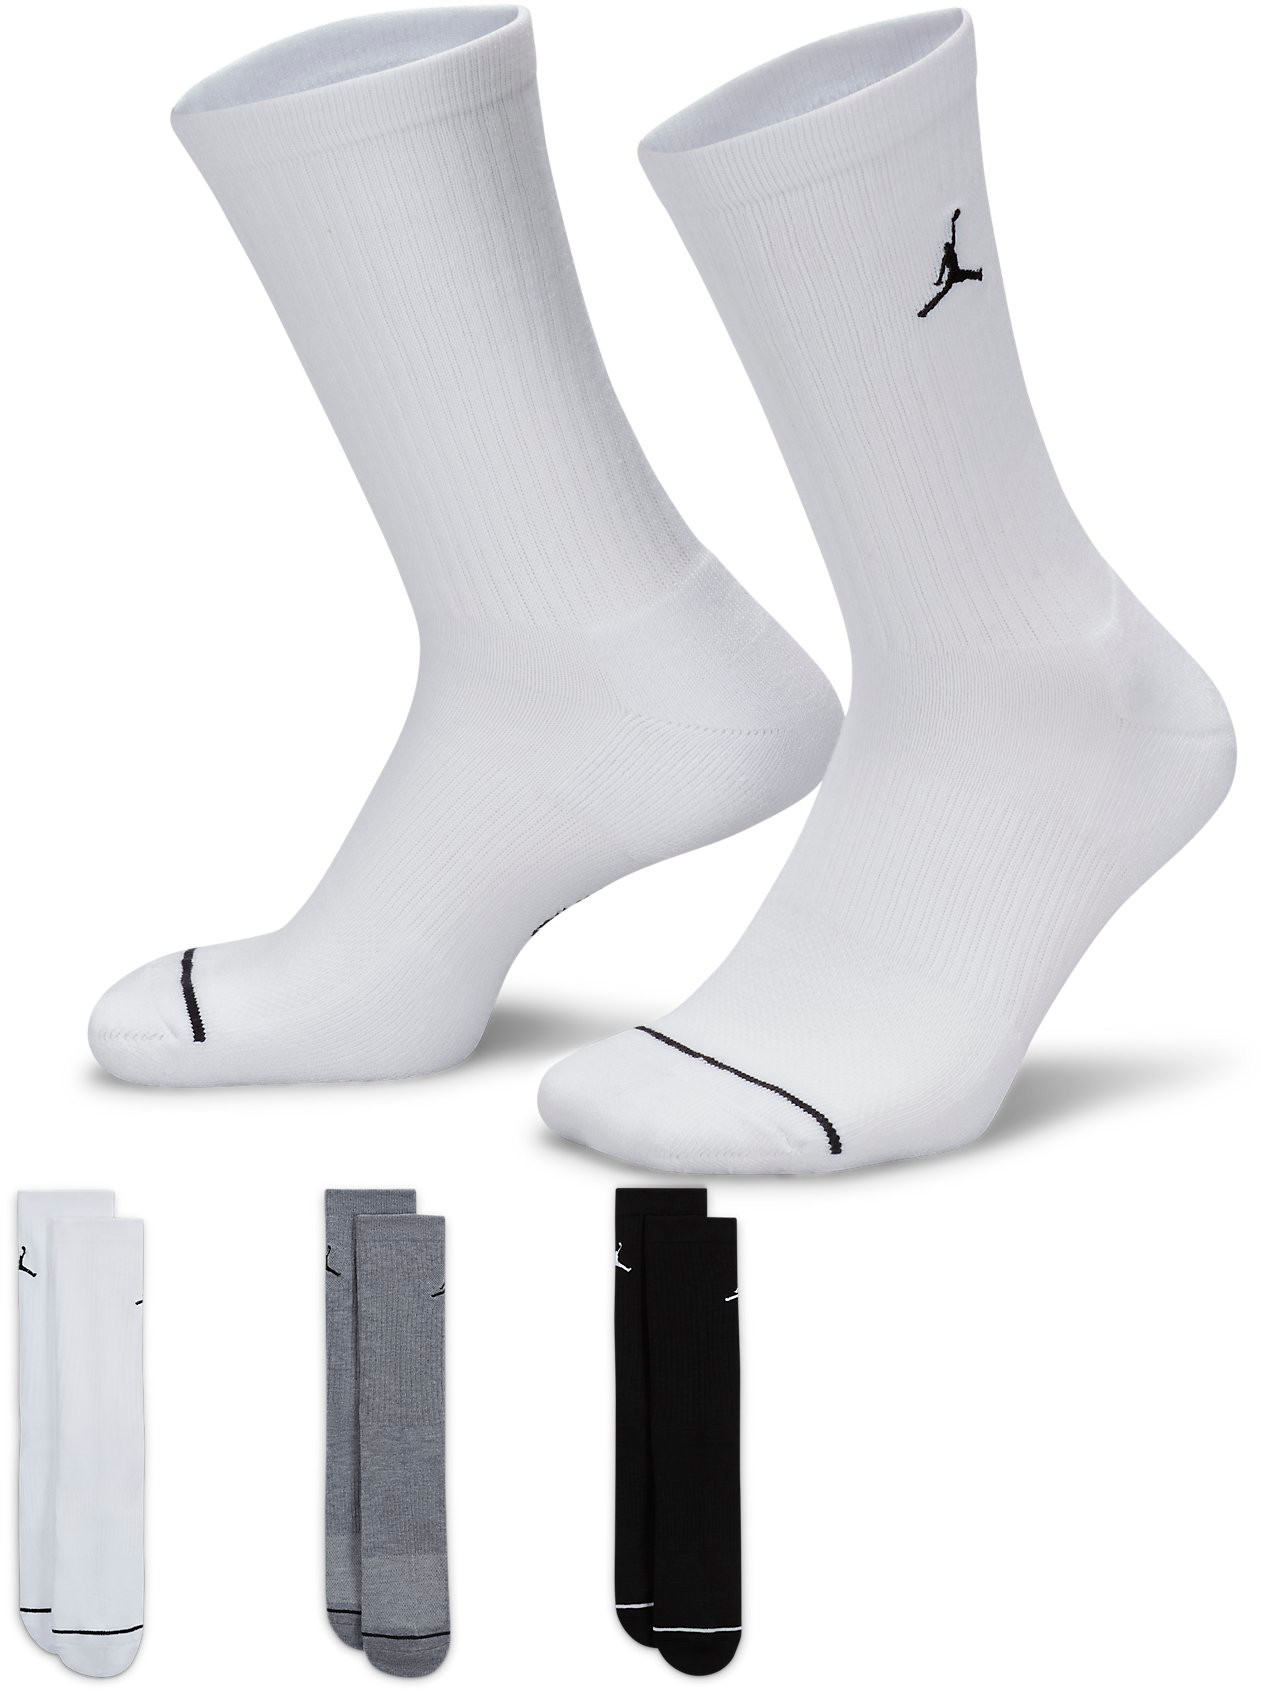 Unisexové středně vysoké ponožky Jordan Everyday Crew (3 páry)